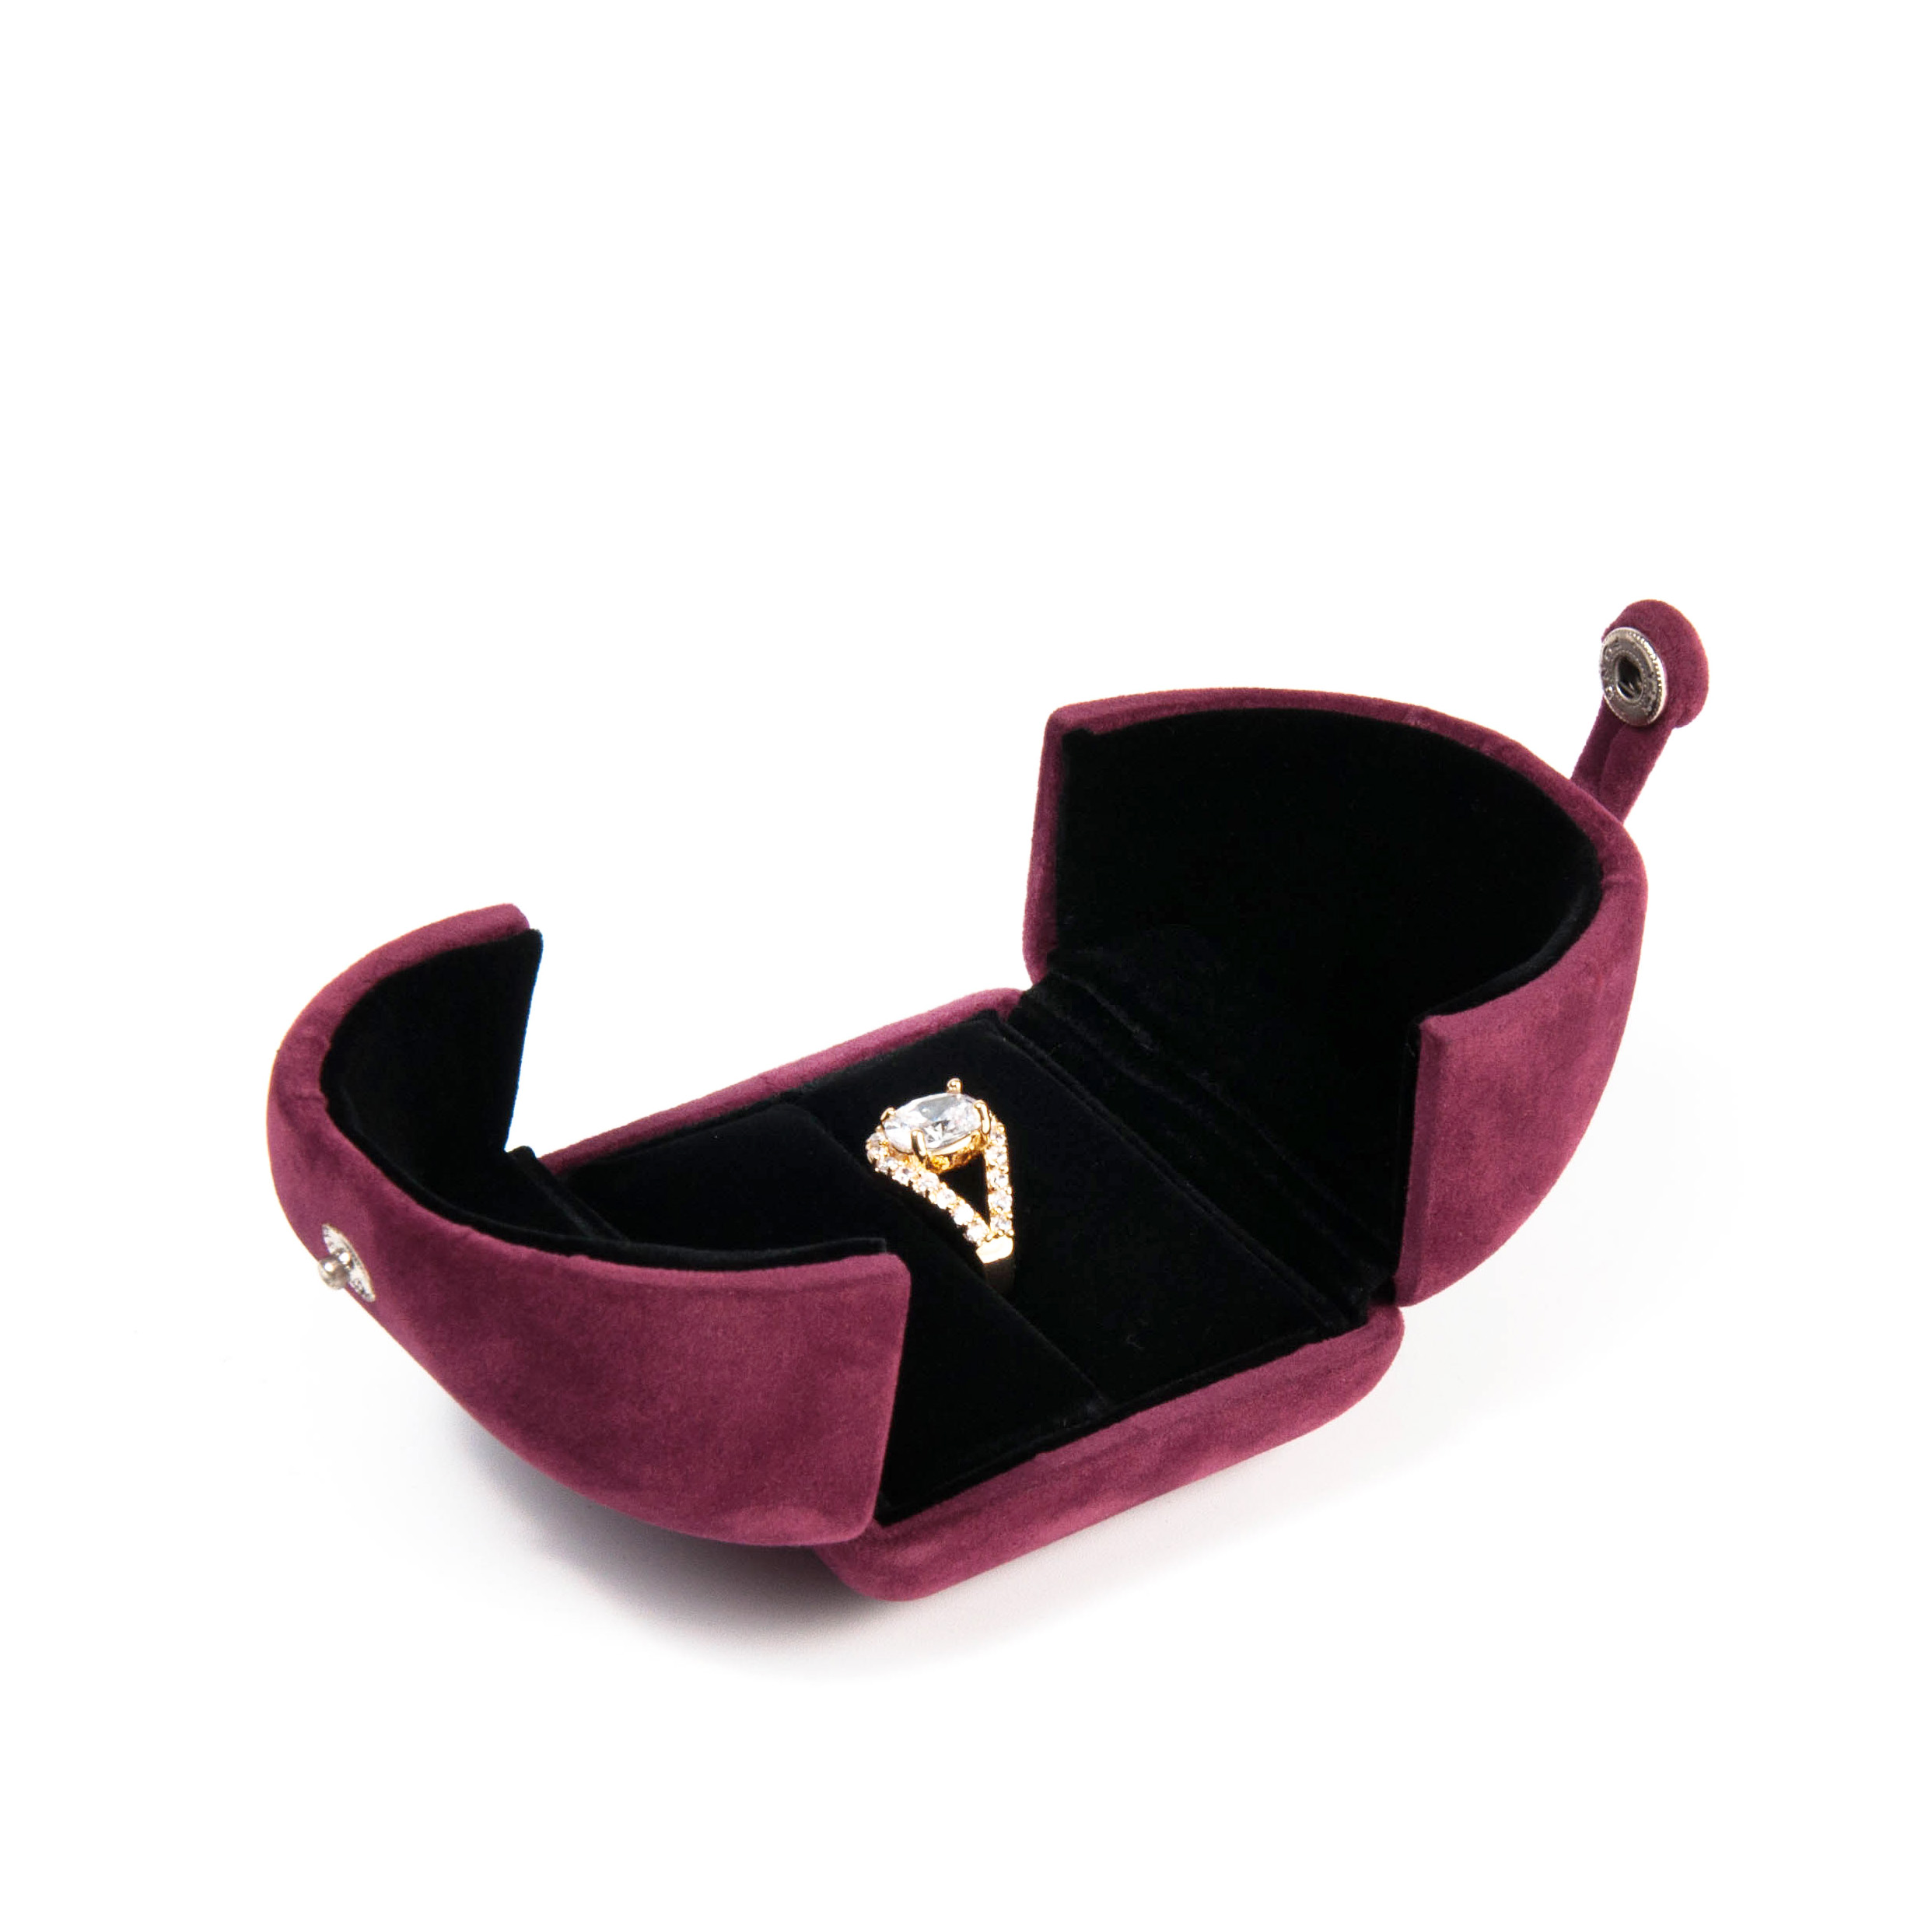 Wholesale logotipo personalizado joyería joyería pendiente pulsera collar anillo caja terciopelo joyería caja de embalaje